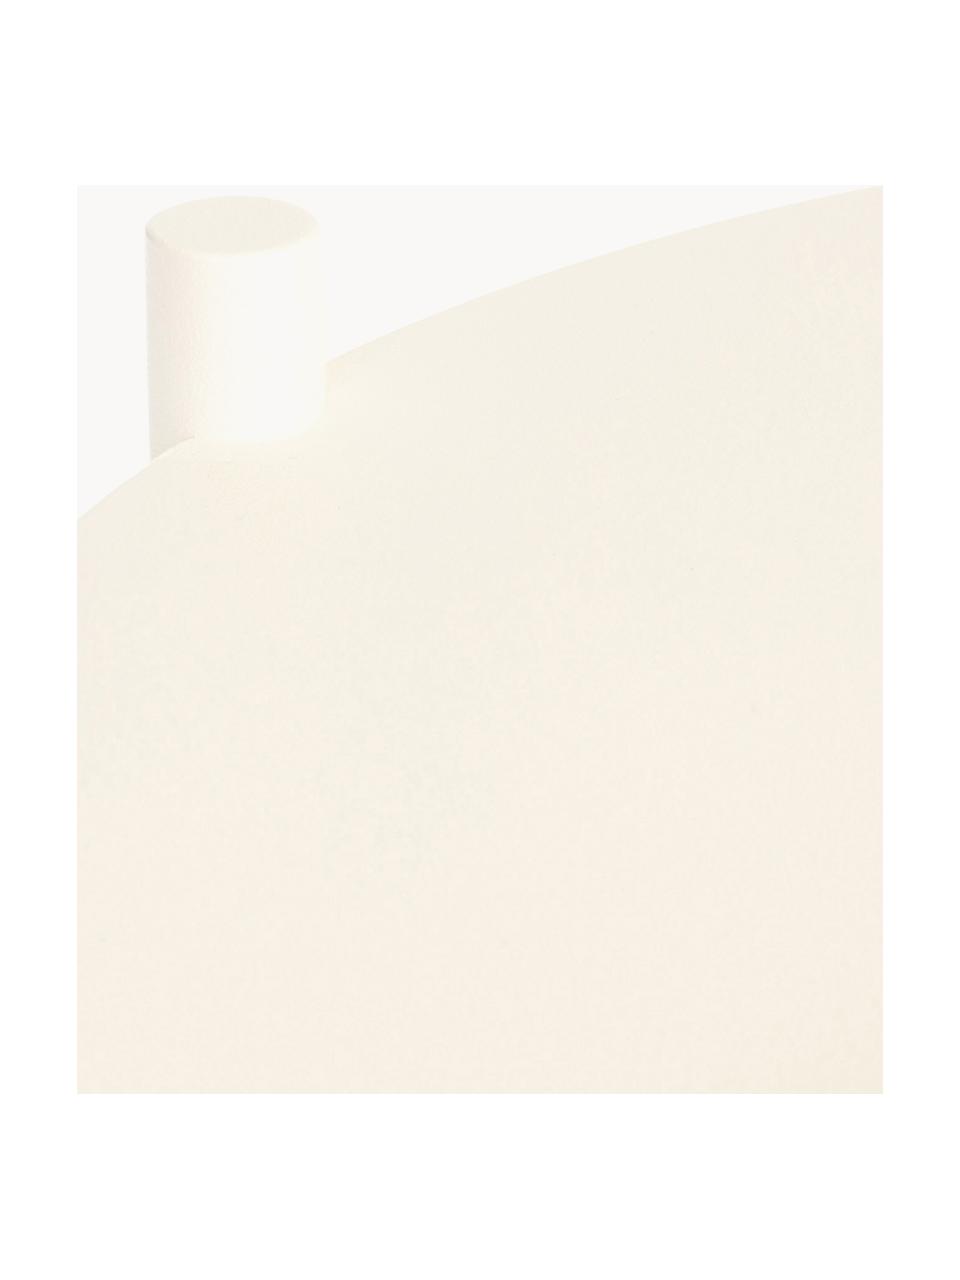 Tavolino rotondo in metallo Ande, Acciaio verniciato a polvere, Bianco latte, Ø 40 x Alt. 55 cm